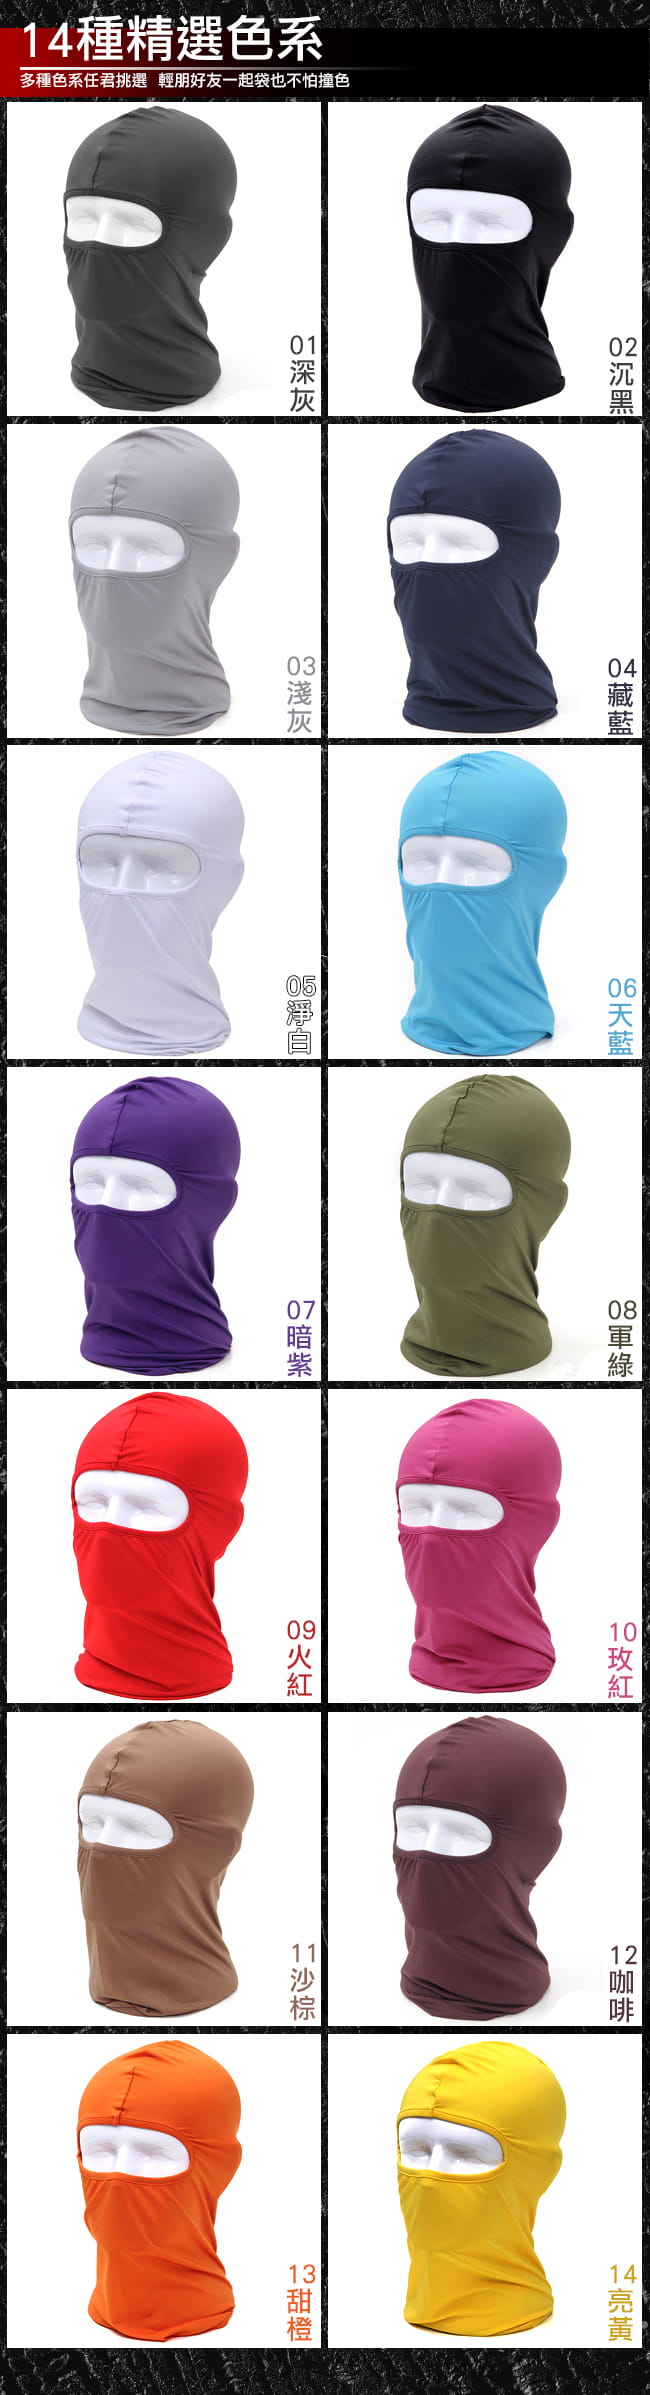 超彈性萊卡防曬頭套 (抗UV防風面罩騎行面罩/騎行頭套蒙面頭套/頭圍脖圍巾/全罩式防風口罩) 11